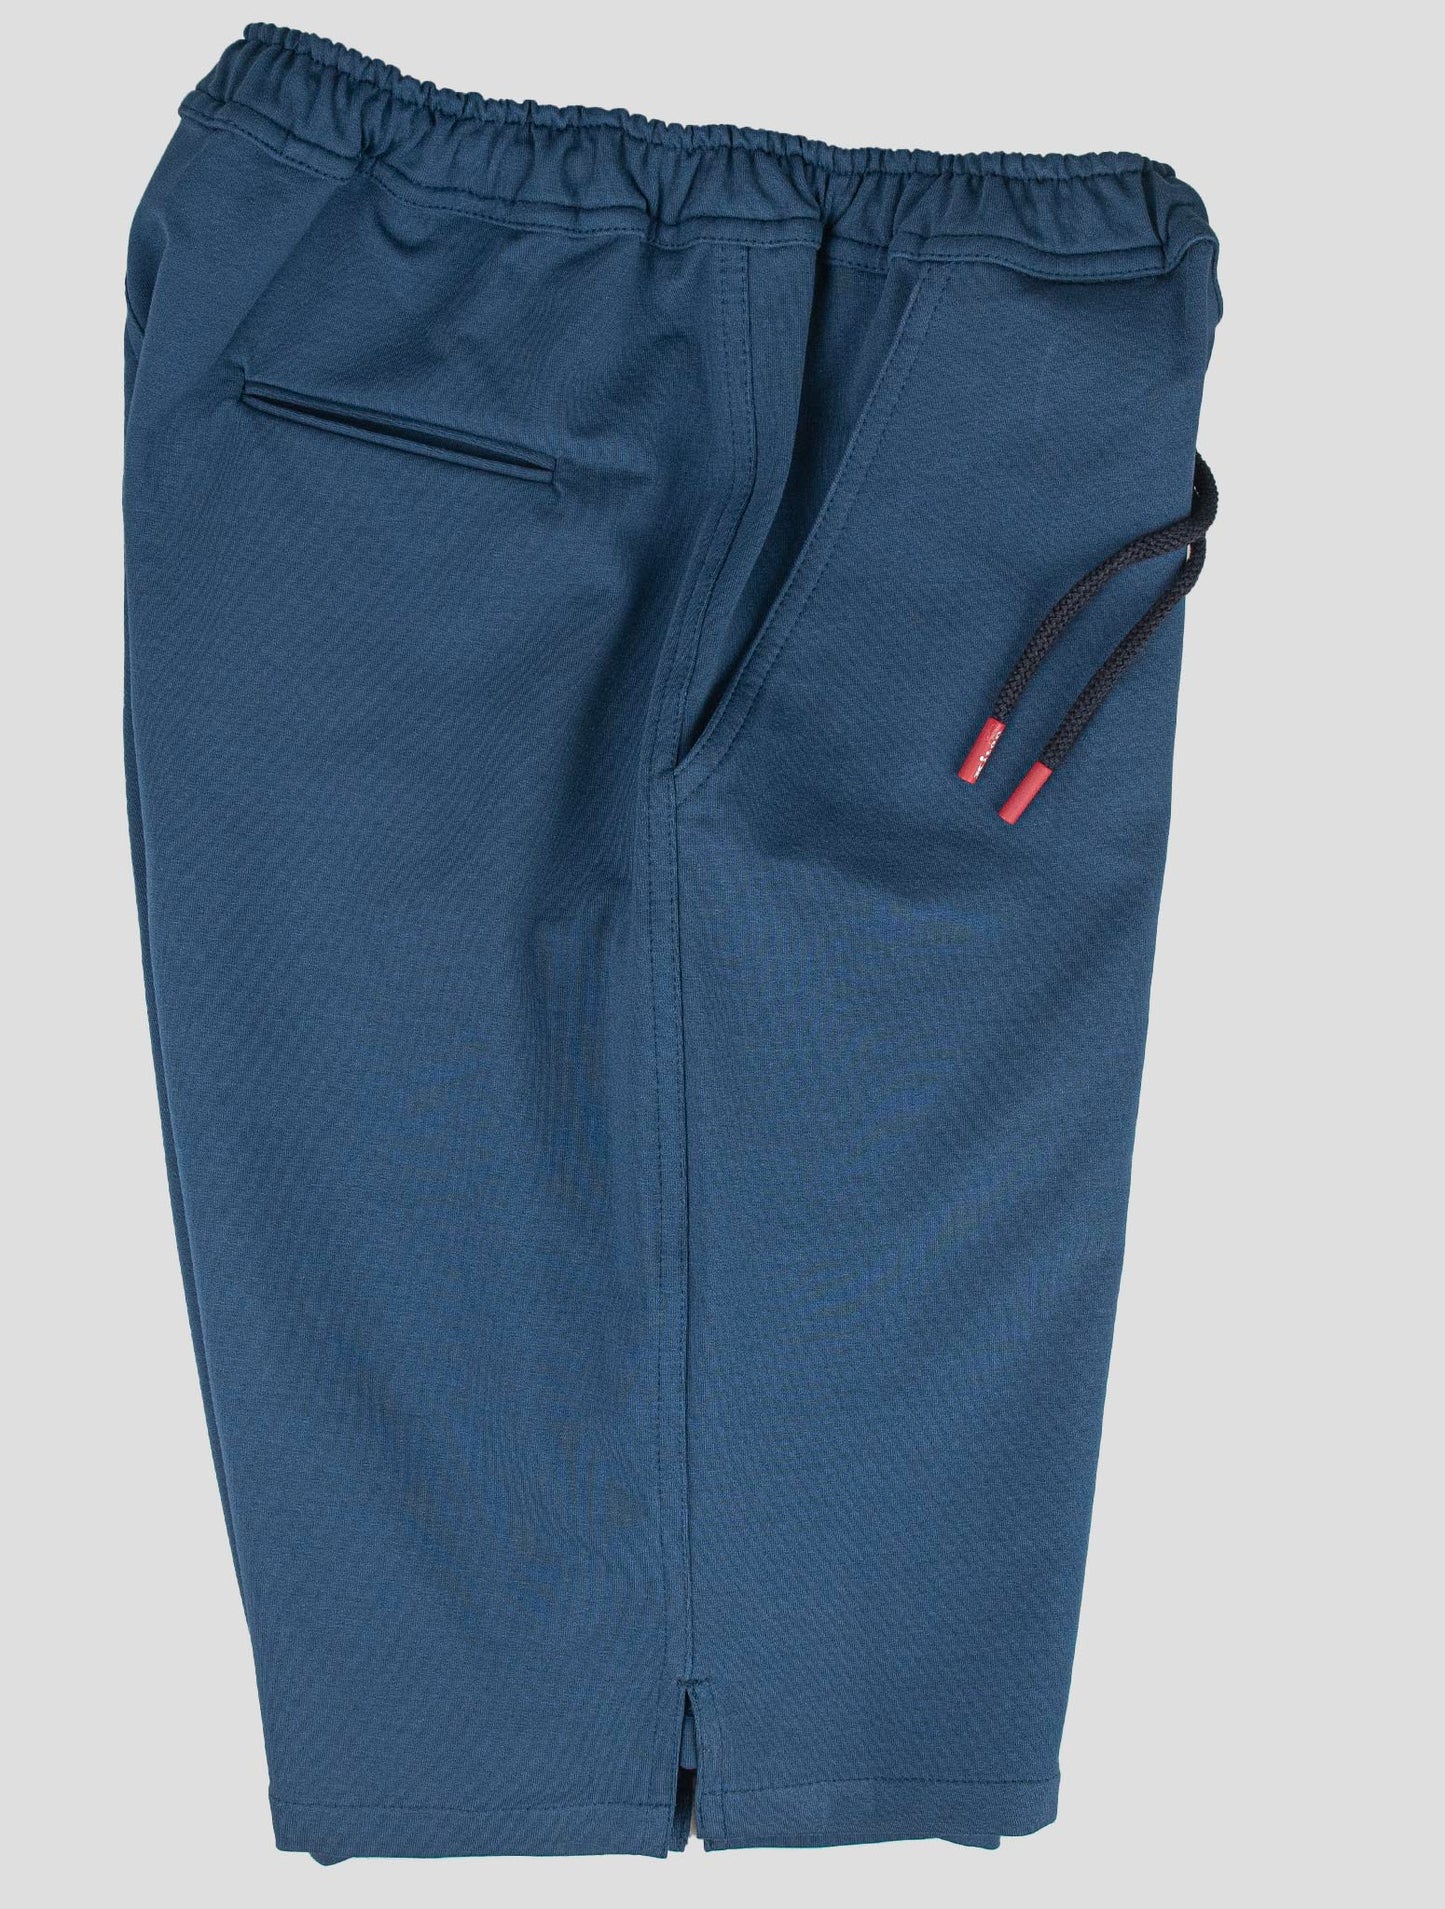 Kiton Matching Outfit-Survêtement Mariano multicolore et pantalon court bleu